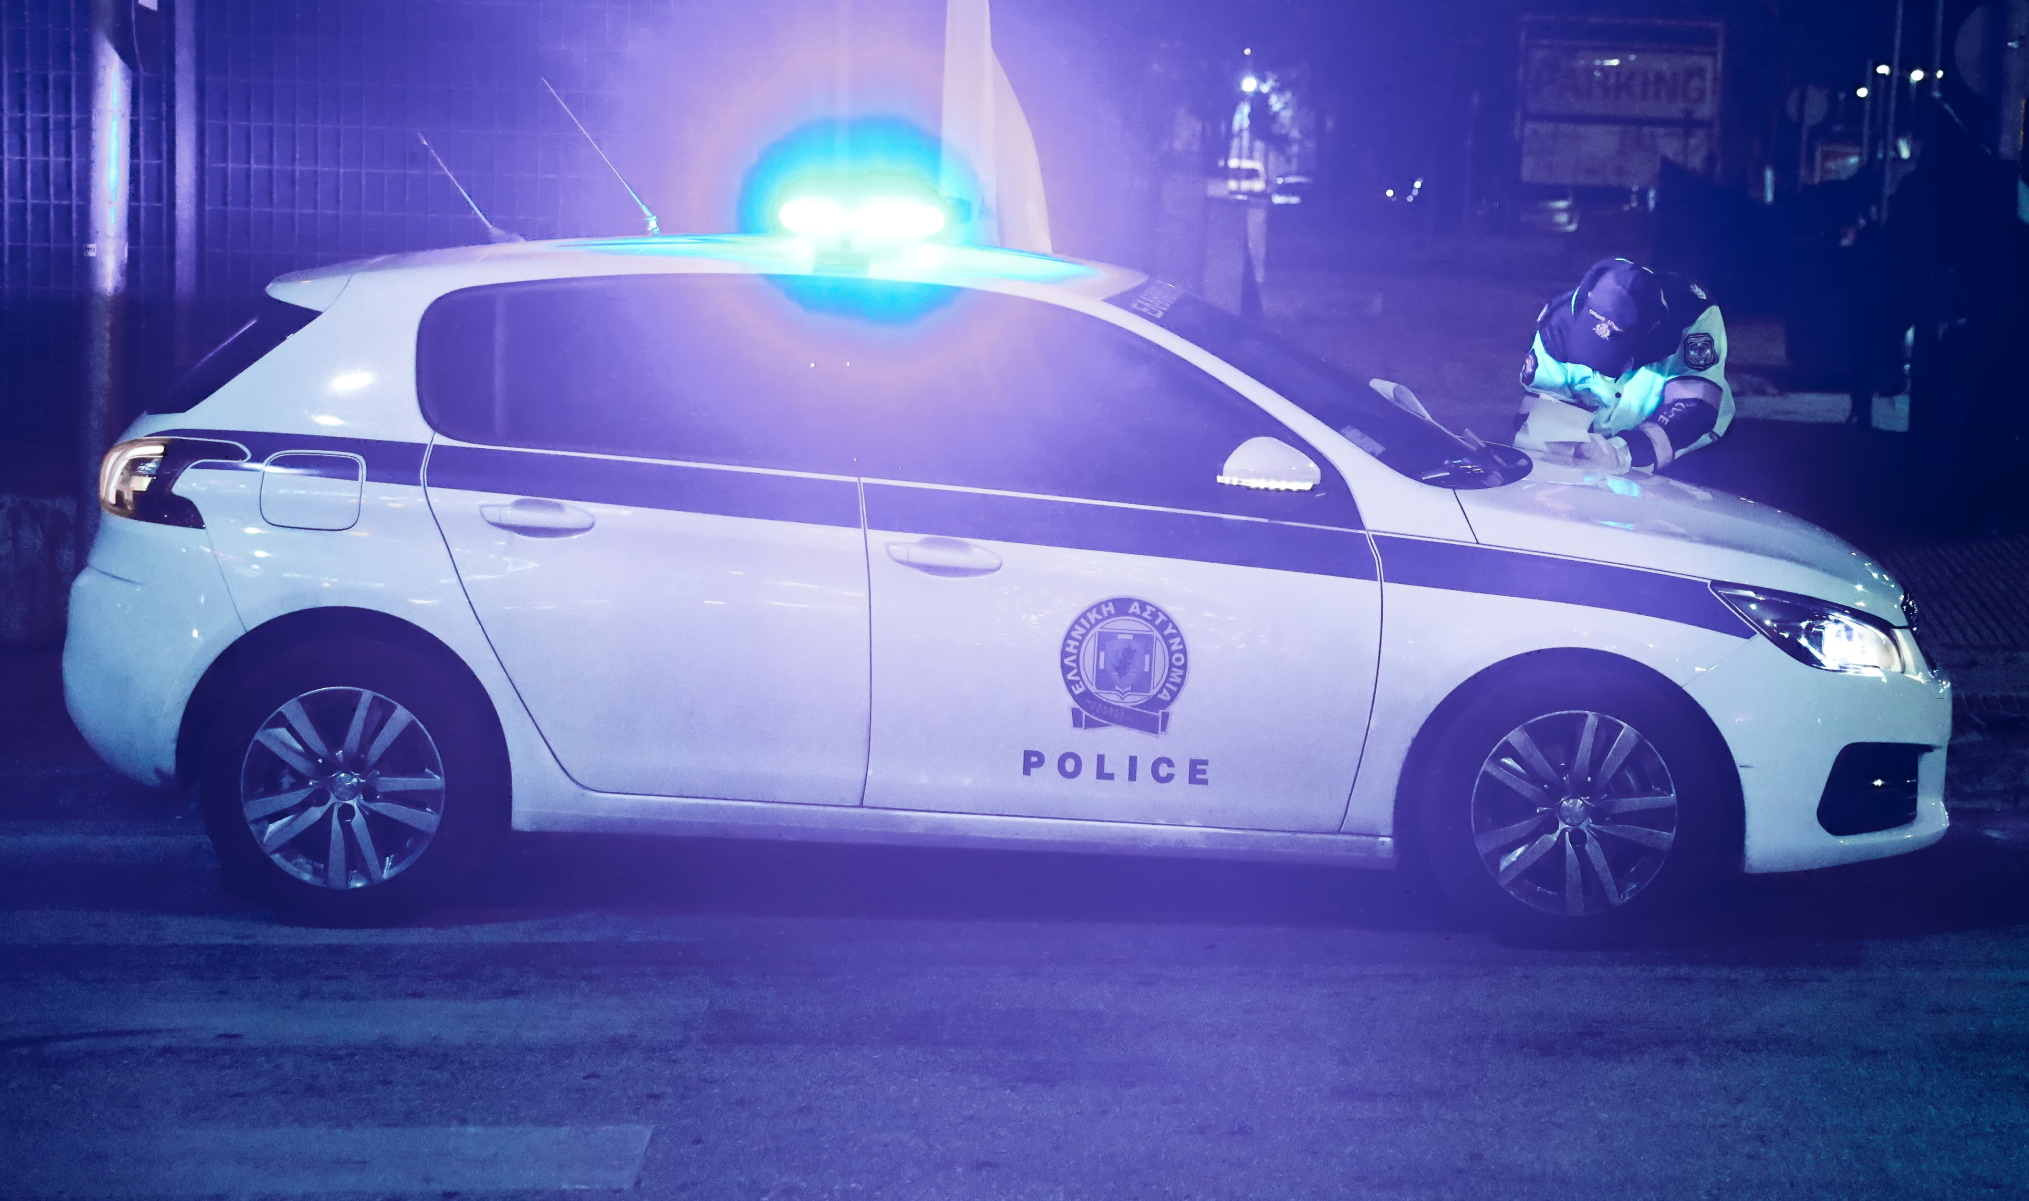 Ιωάννινα: Καταδίωξη αυτοκινήτου – Περιπολικό δέχθηκε πυρά από καλάσνικοφ στα Τζουμέρκα